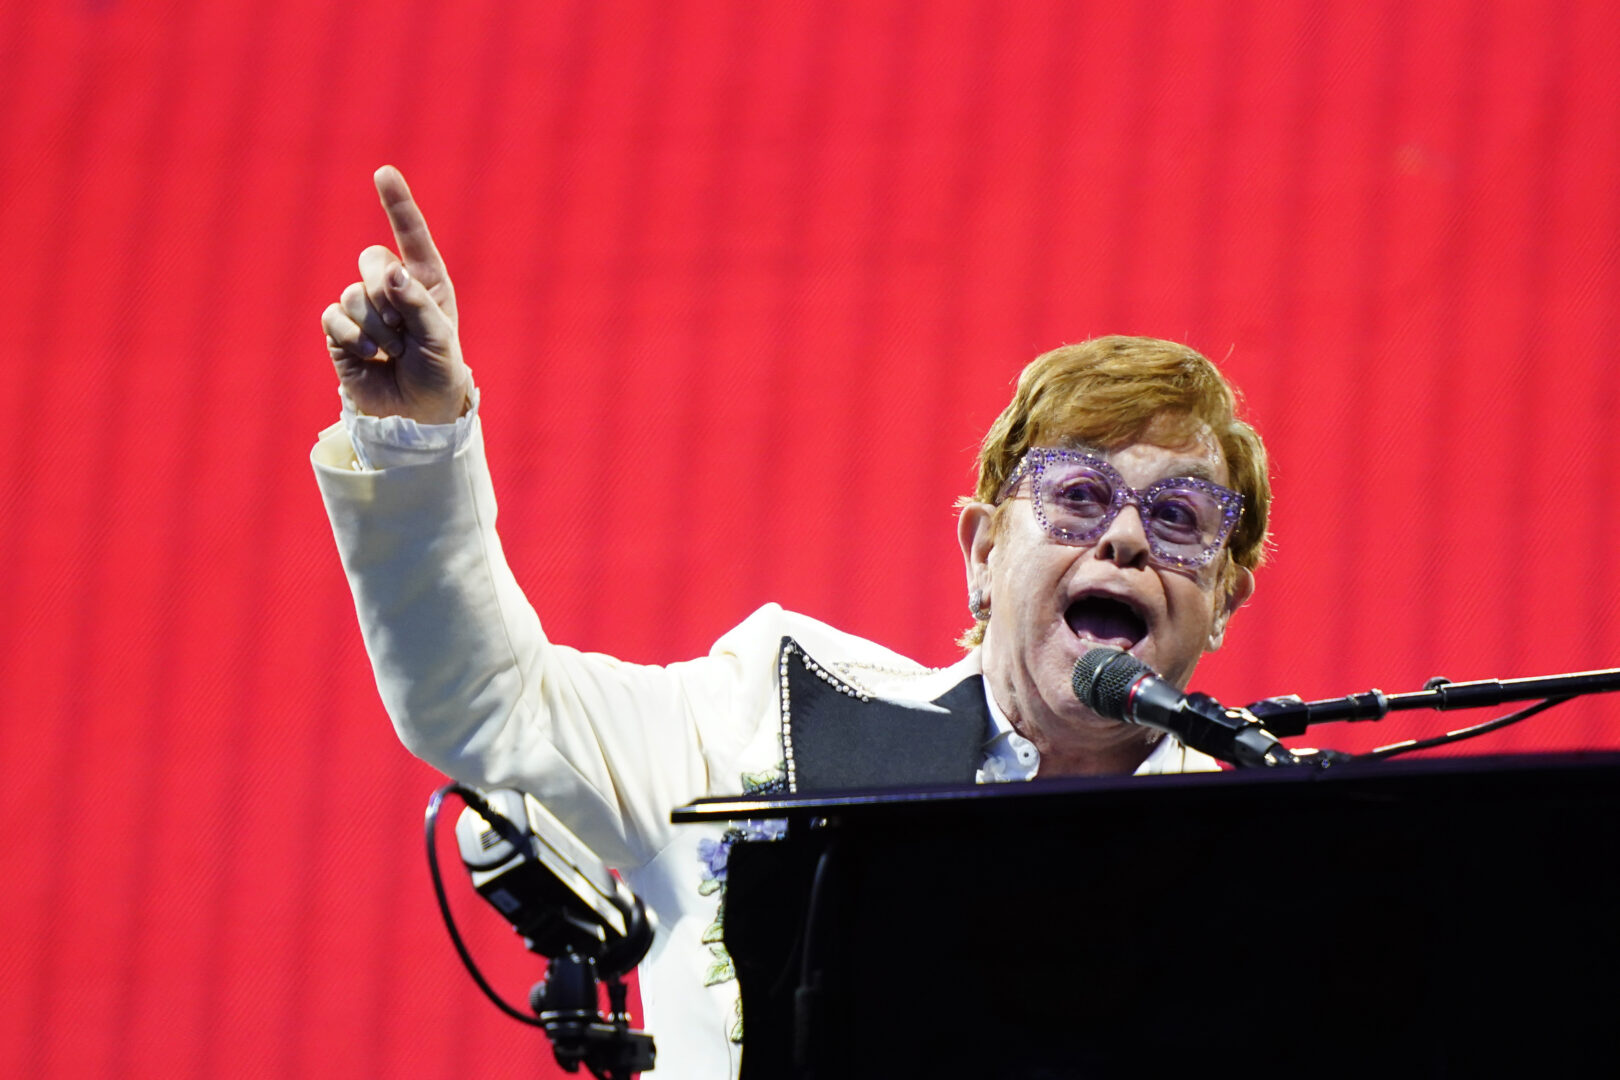 Elton John performs during his 